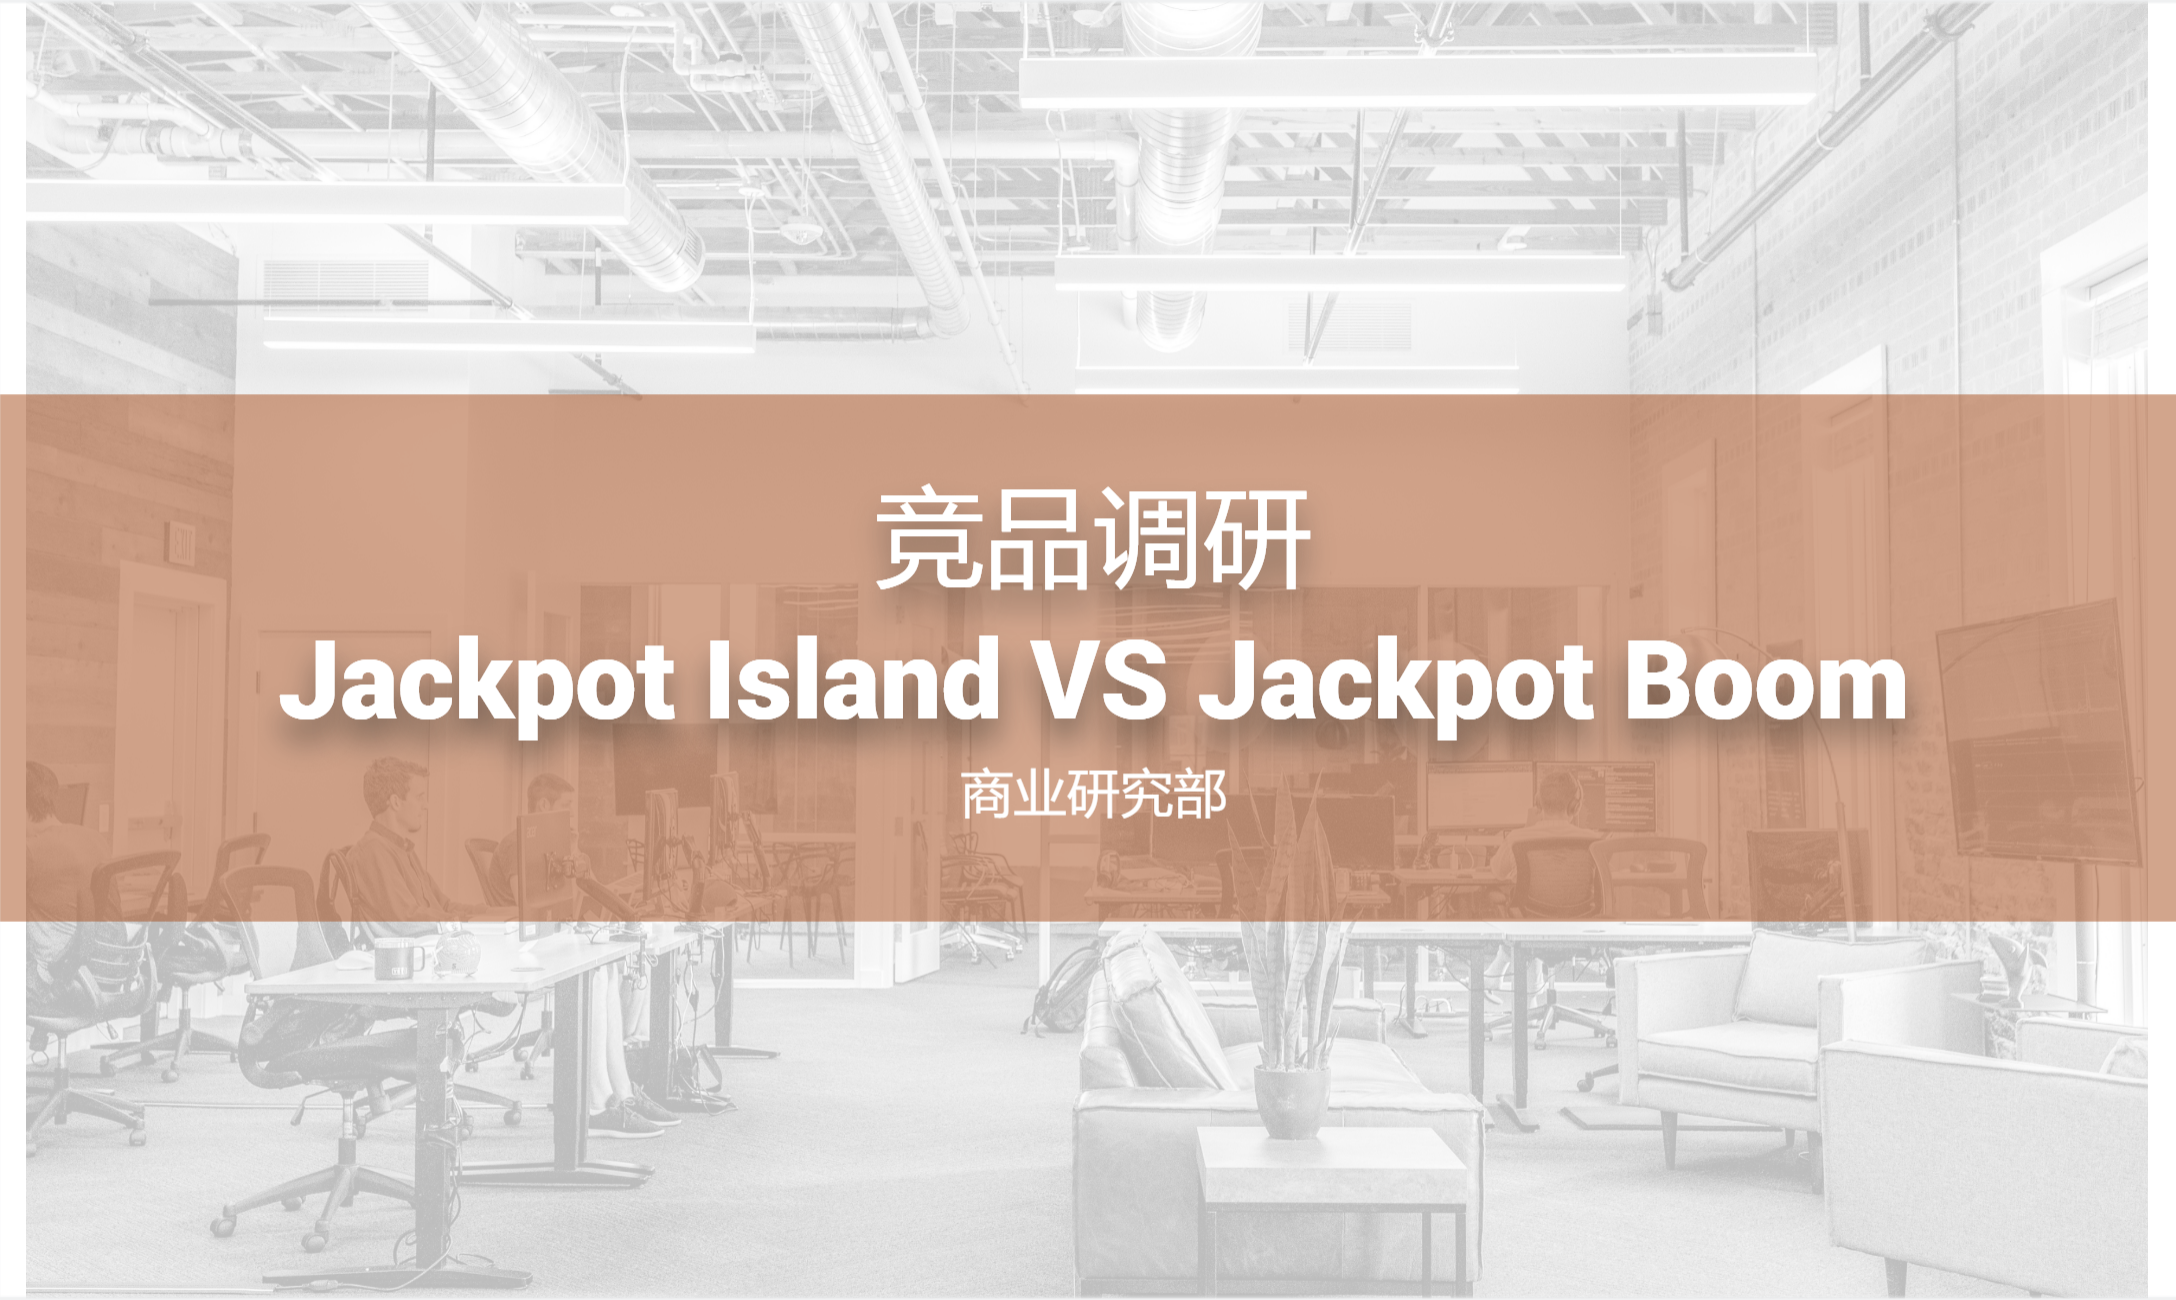 竞品调研-Jackpot Island VS Jackpot Boom